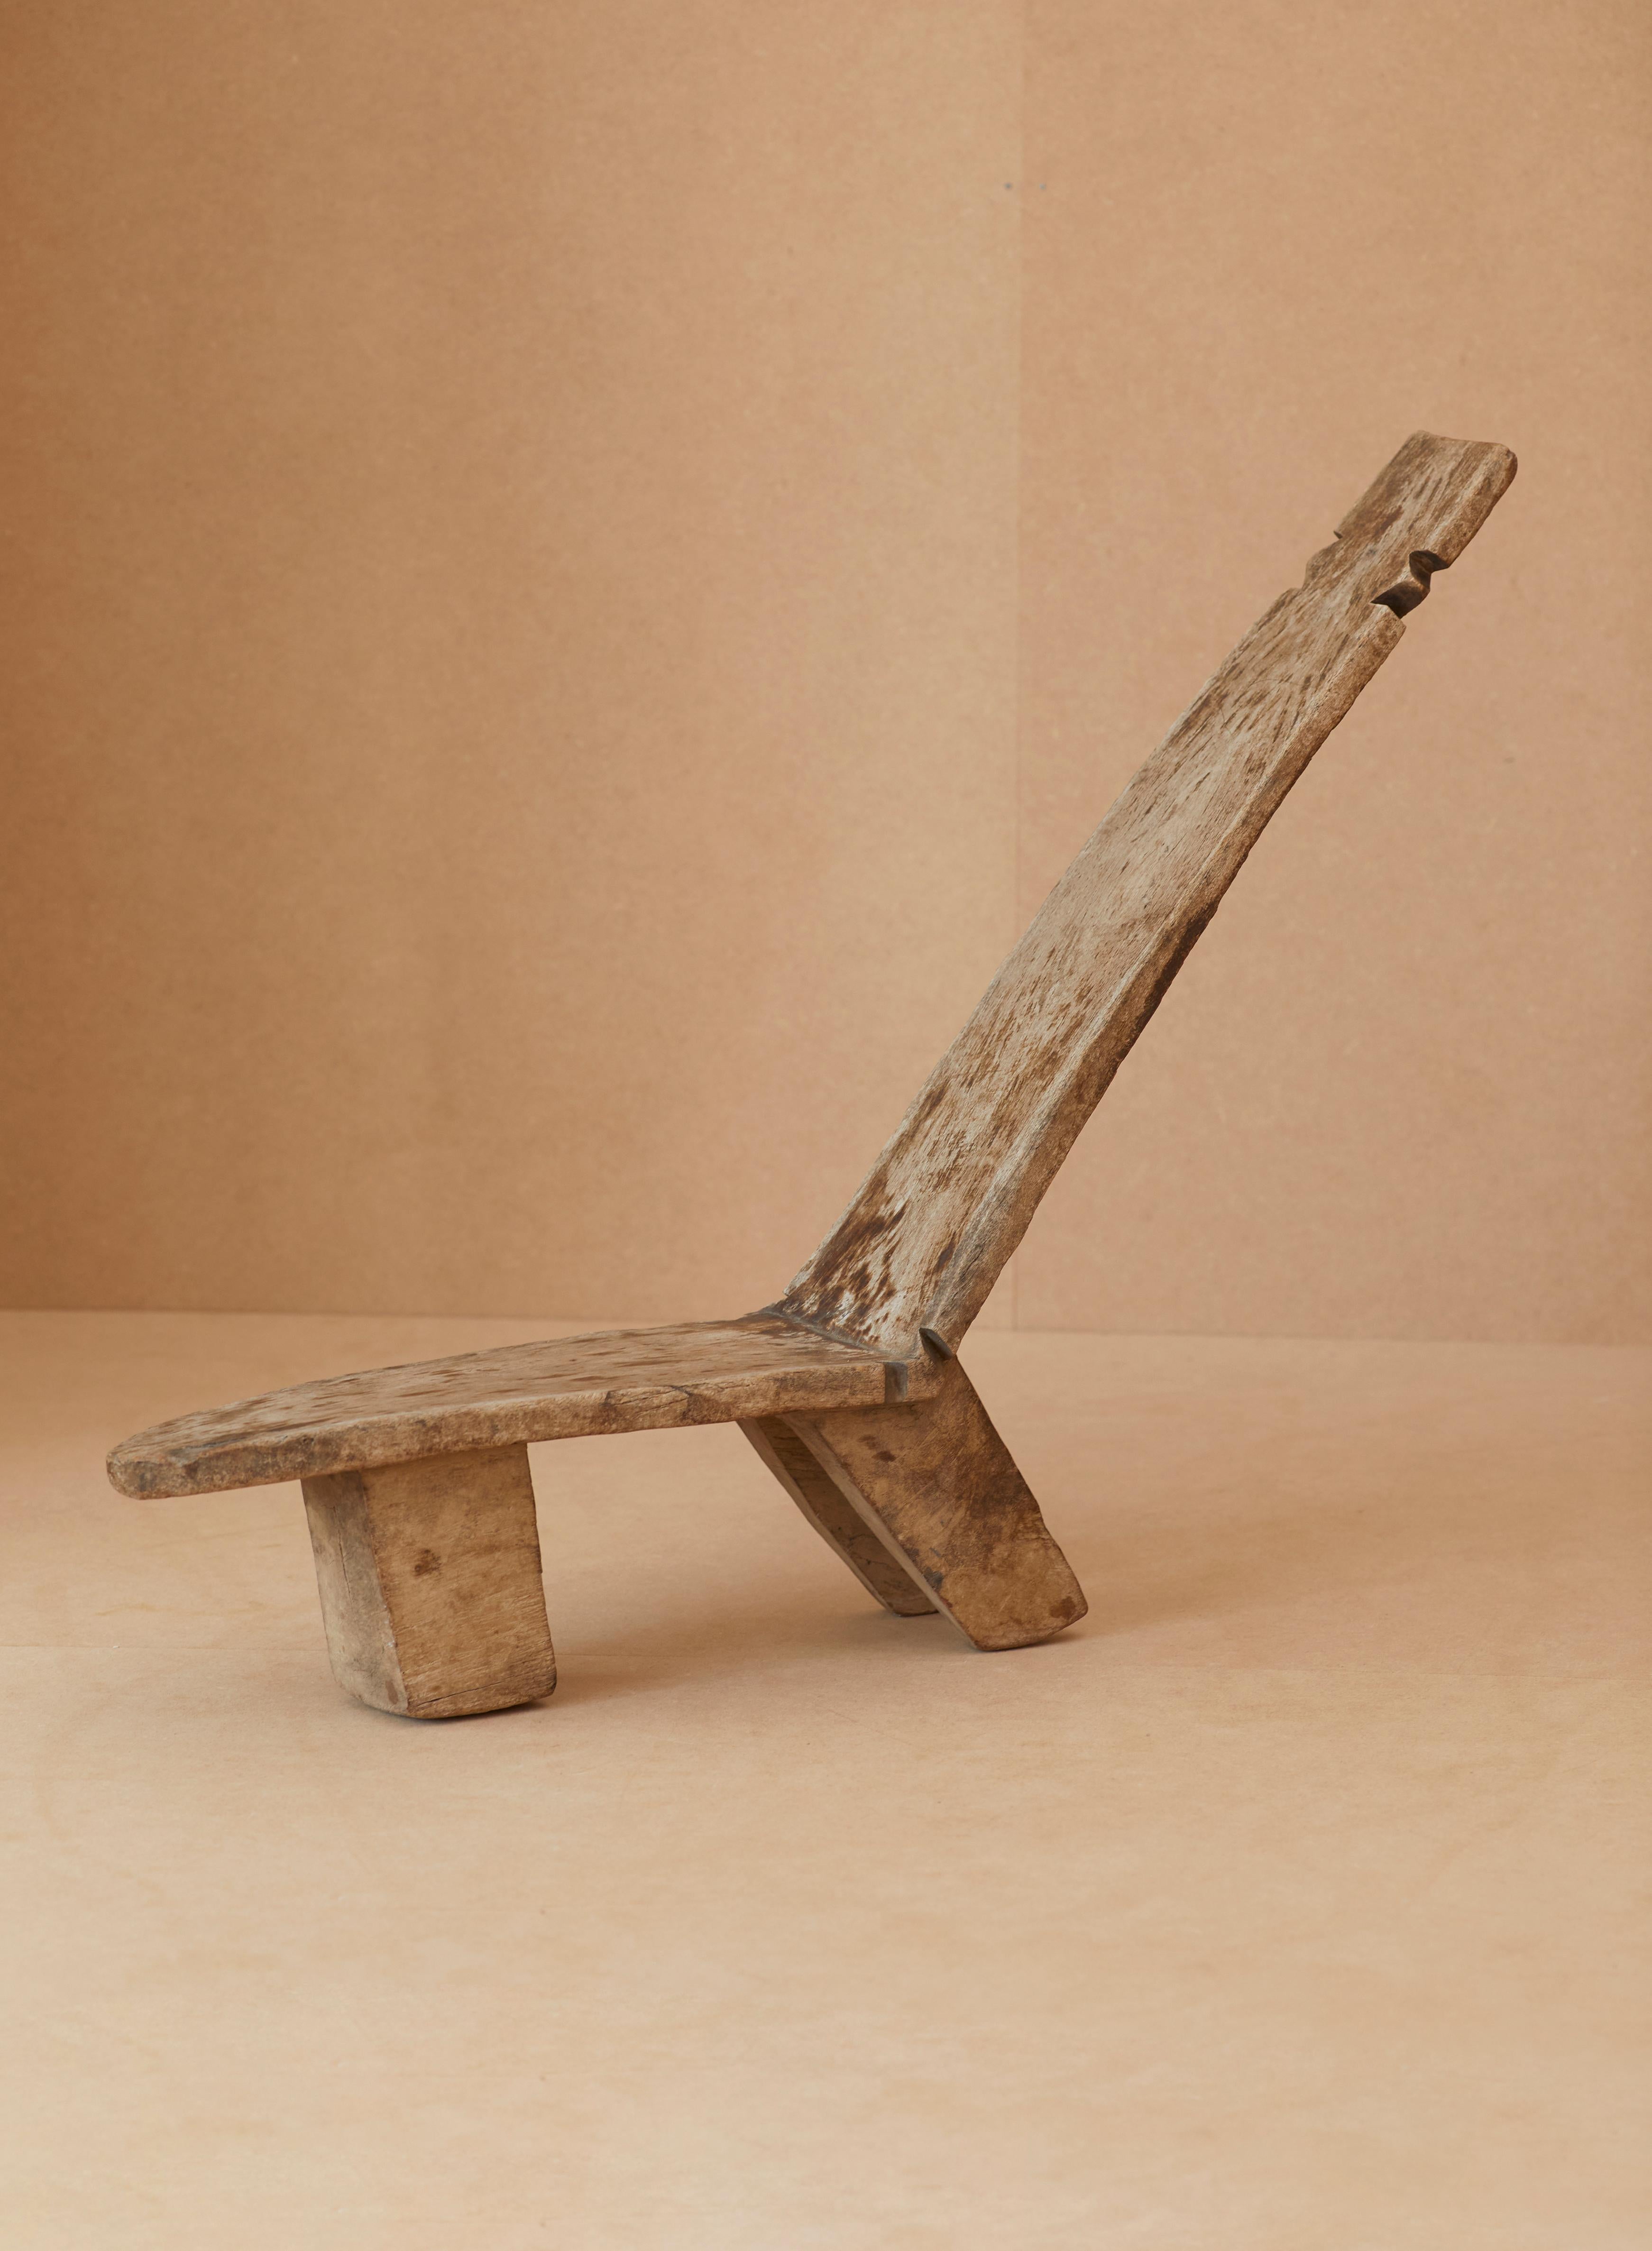 Chaise Lobi inclinable sculptée à la main avec des détails géométriques, Afrique de l'Ouest, vers les années 1940-1950. Fabriqué à partir d'un seul bloc de bois de Molave.

Le peuple Lobi appartient à un groupe ethnique originaire de l'actuel Ghana